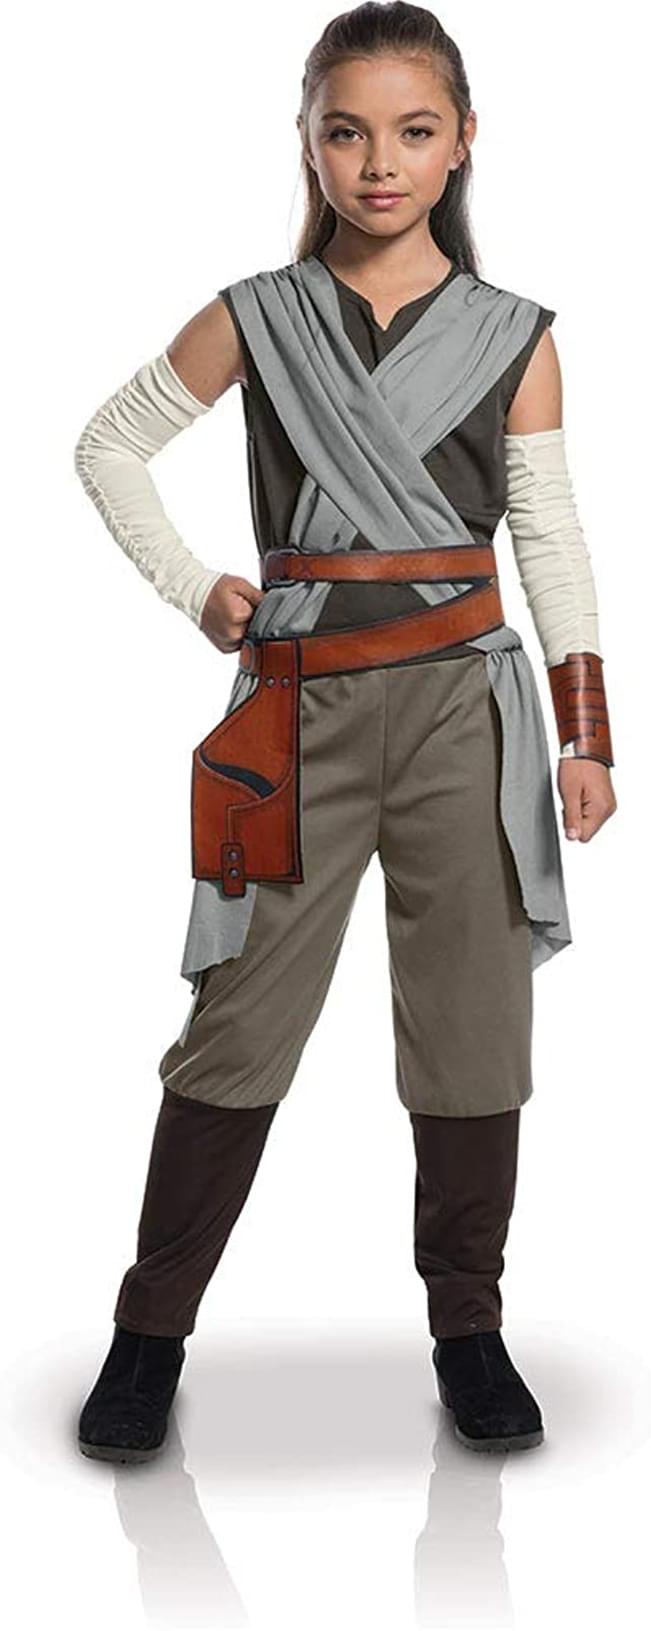 Star Wars Episode VIII Rey Child Costume